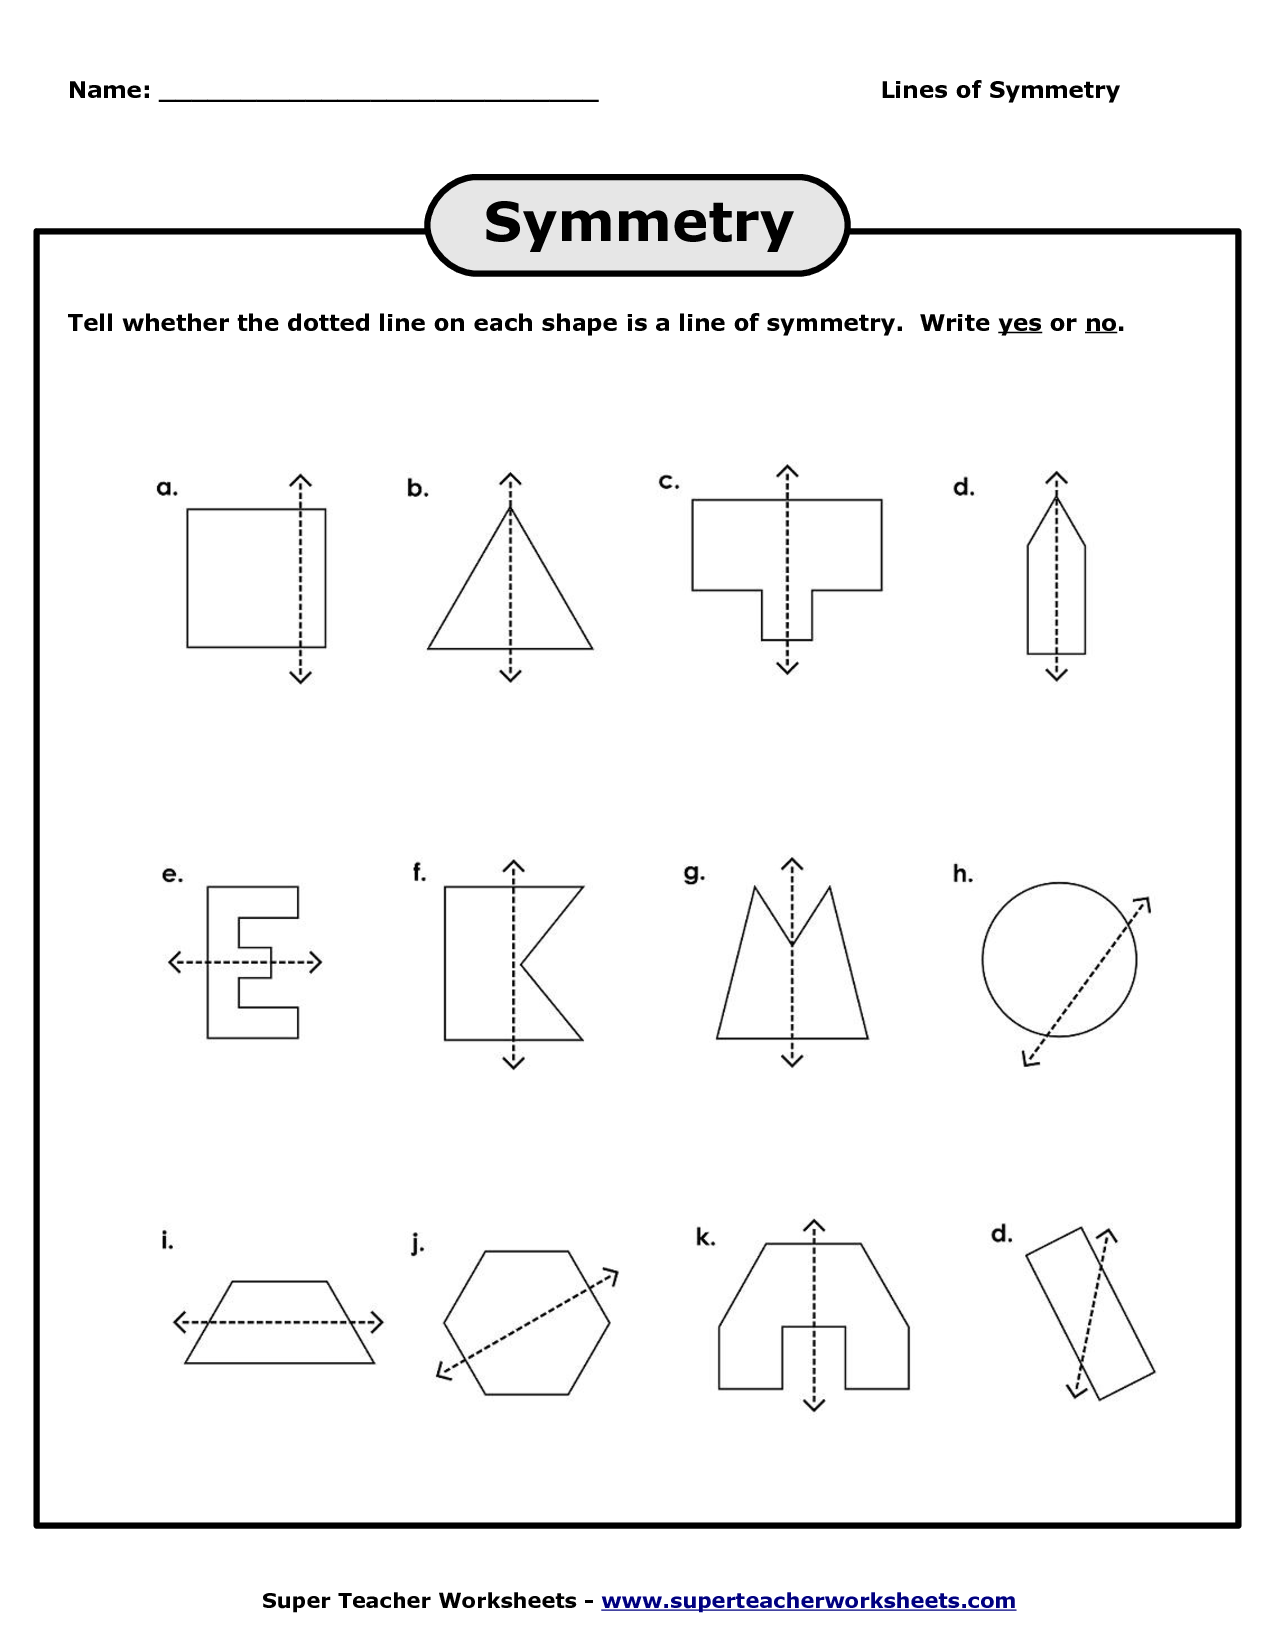 Free Printable Worksheet Lines Of Symetry